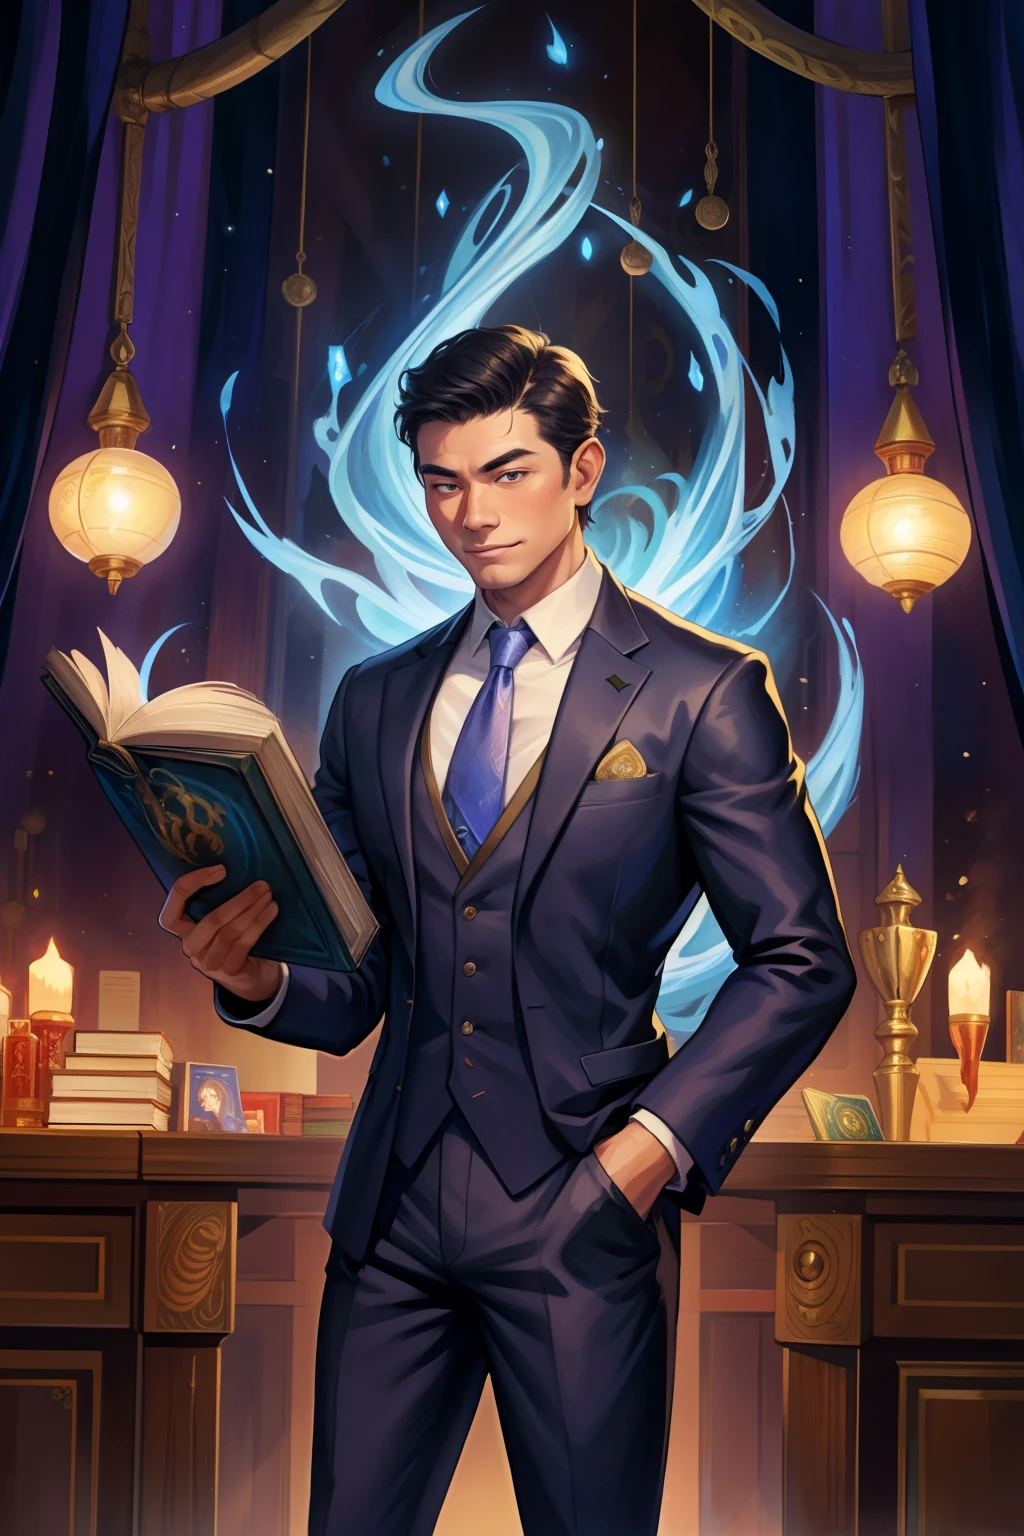 ハンサムな, スーツを着たアジア人の成熟した男性が、マジック・ザ・ギャザリングのカードに囲まれ、中央にダンジョンズ・アンド・ドラゴンズの本を置いている。.